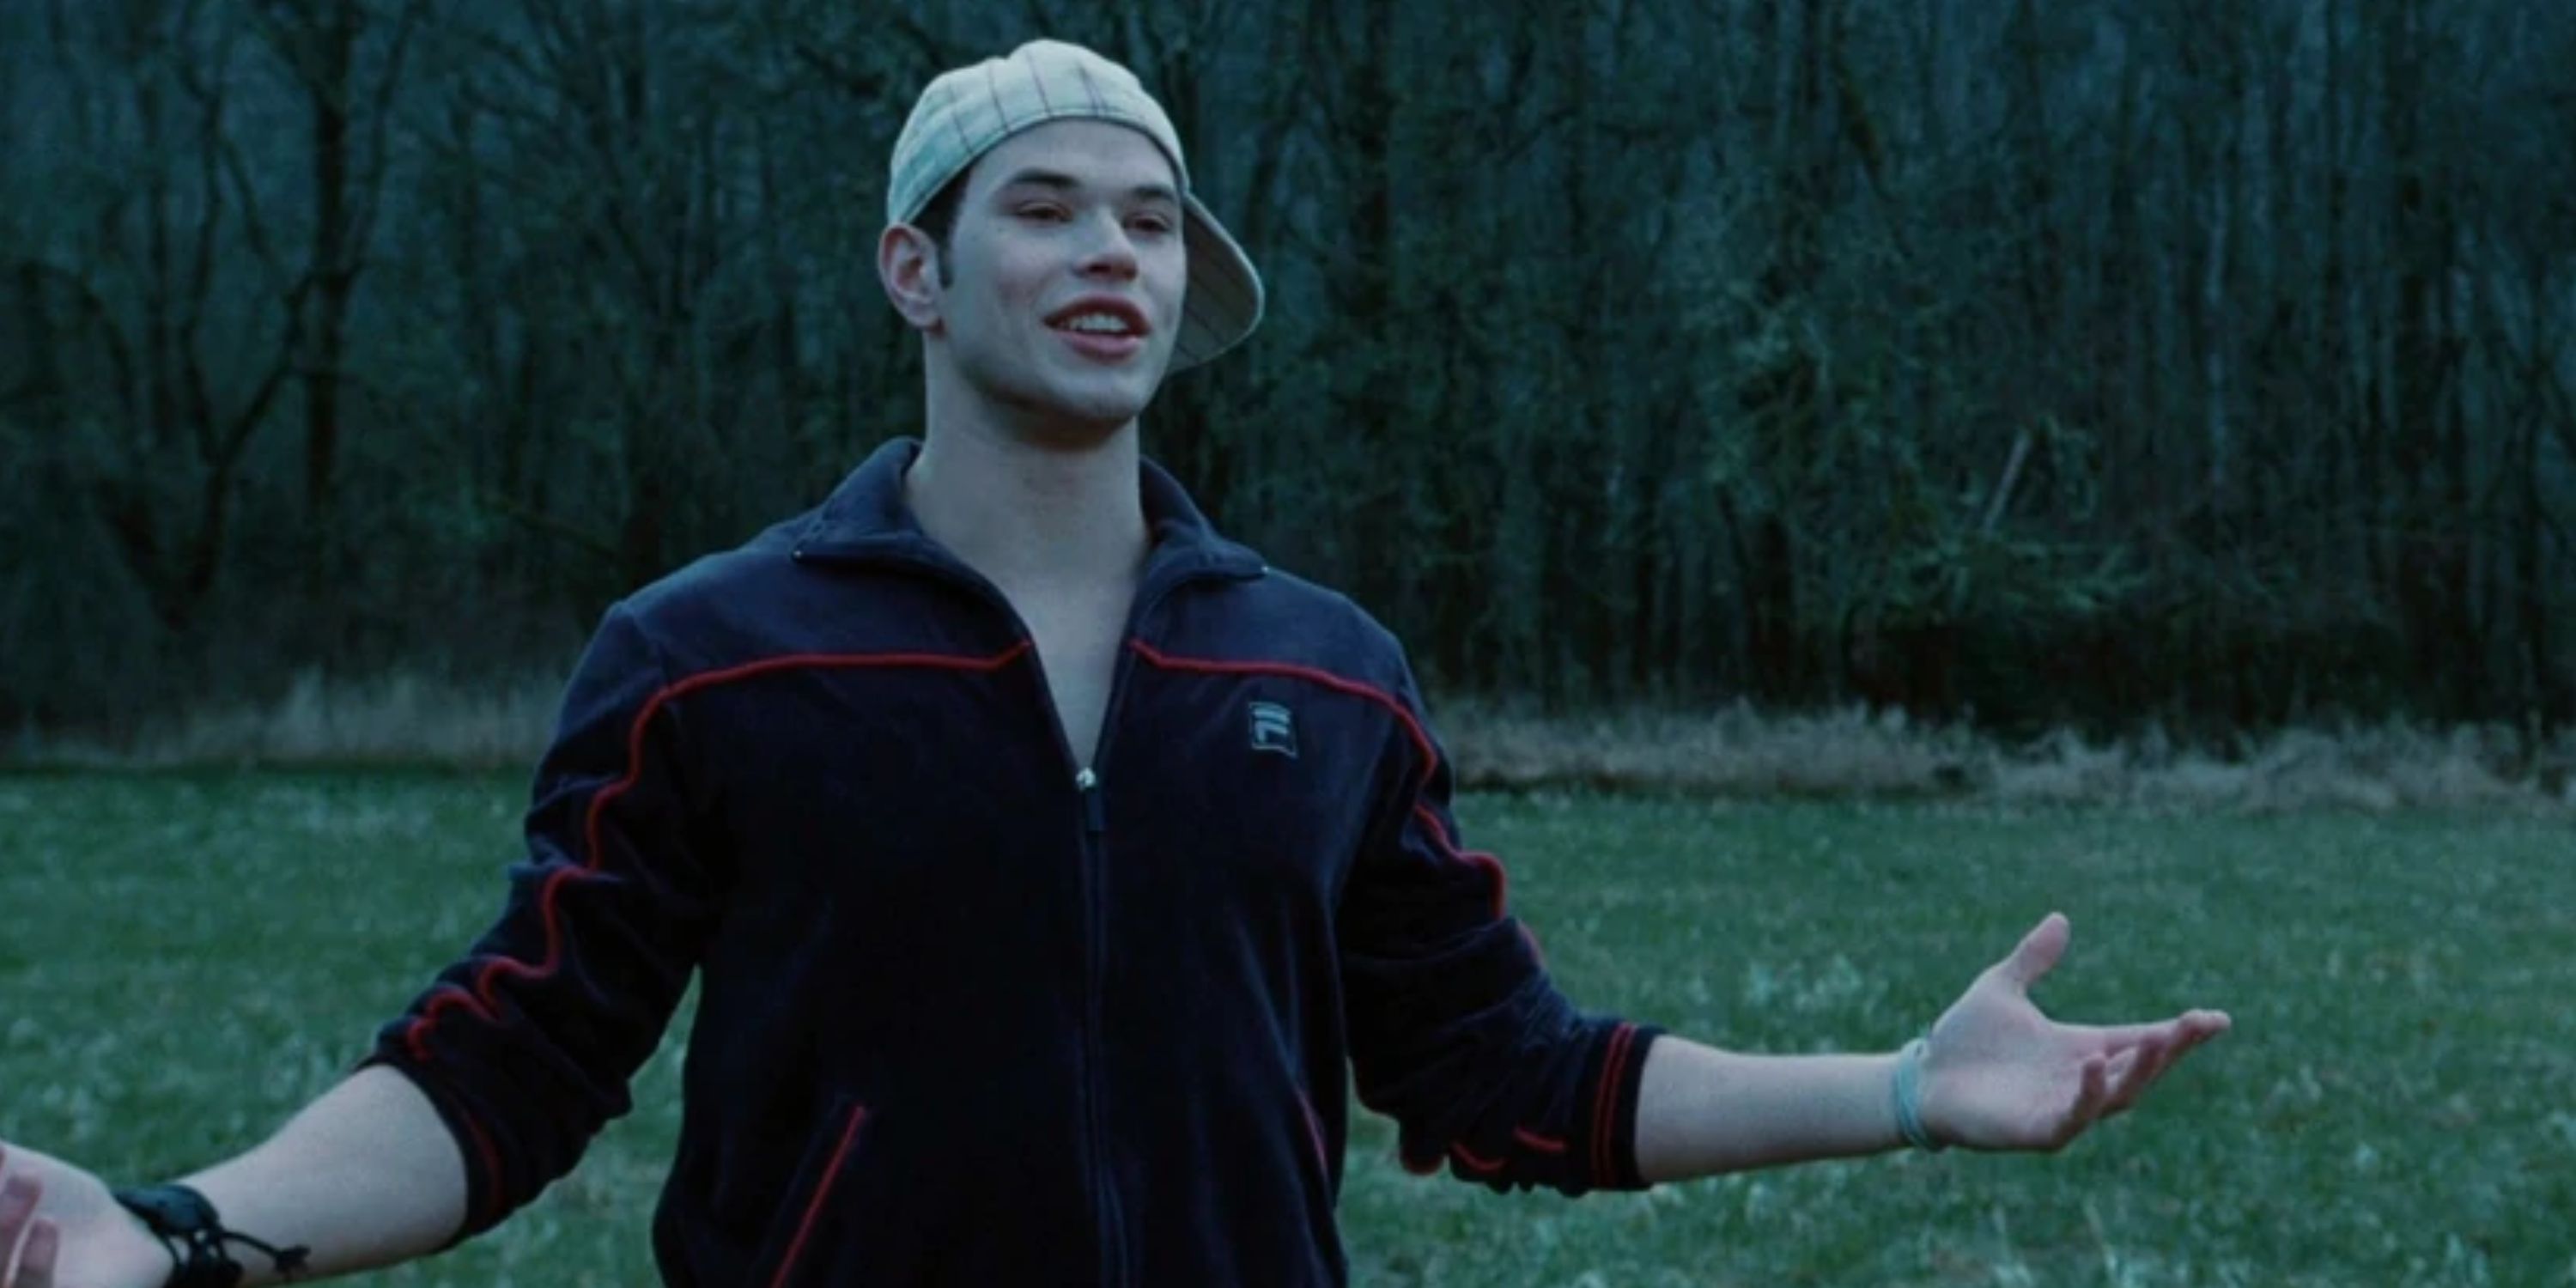 Emmett Cullen in 'Twilight', wearing a backwards baseball cap in a field.